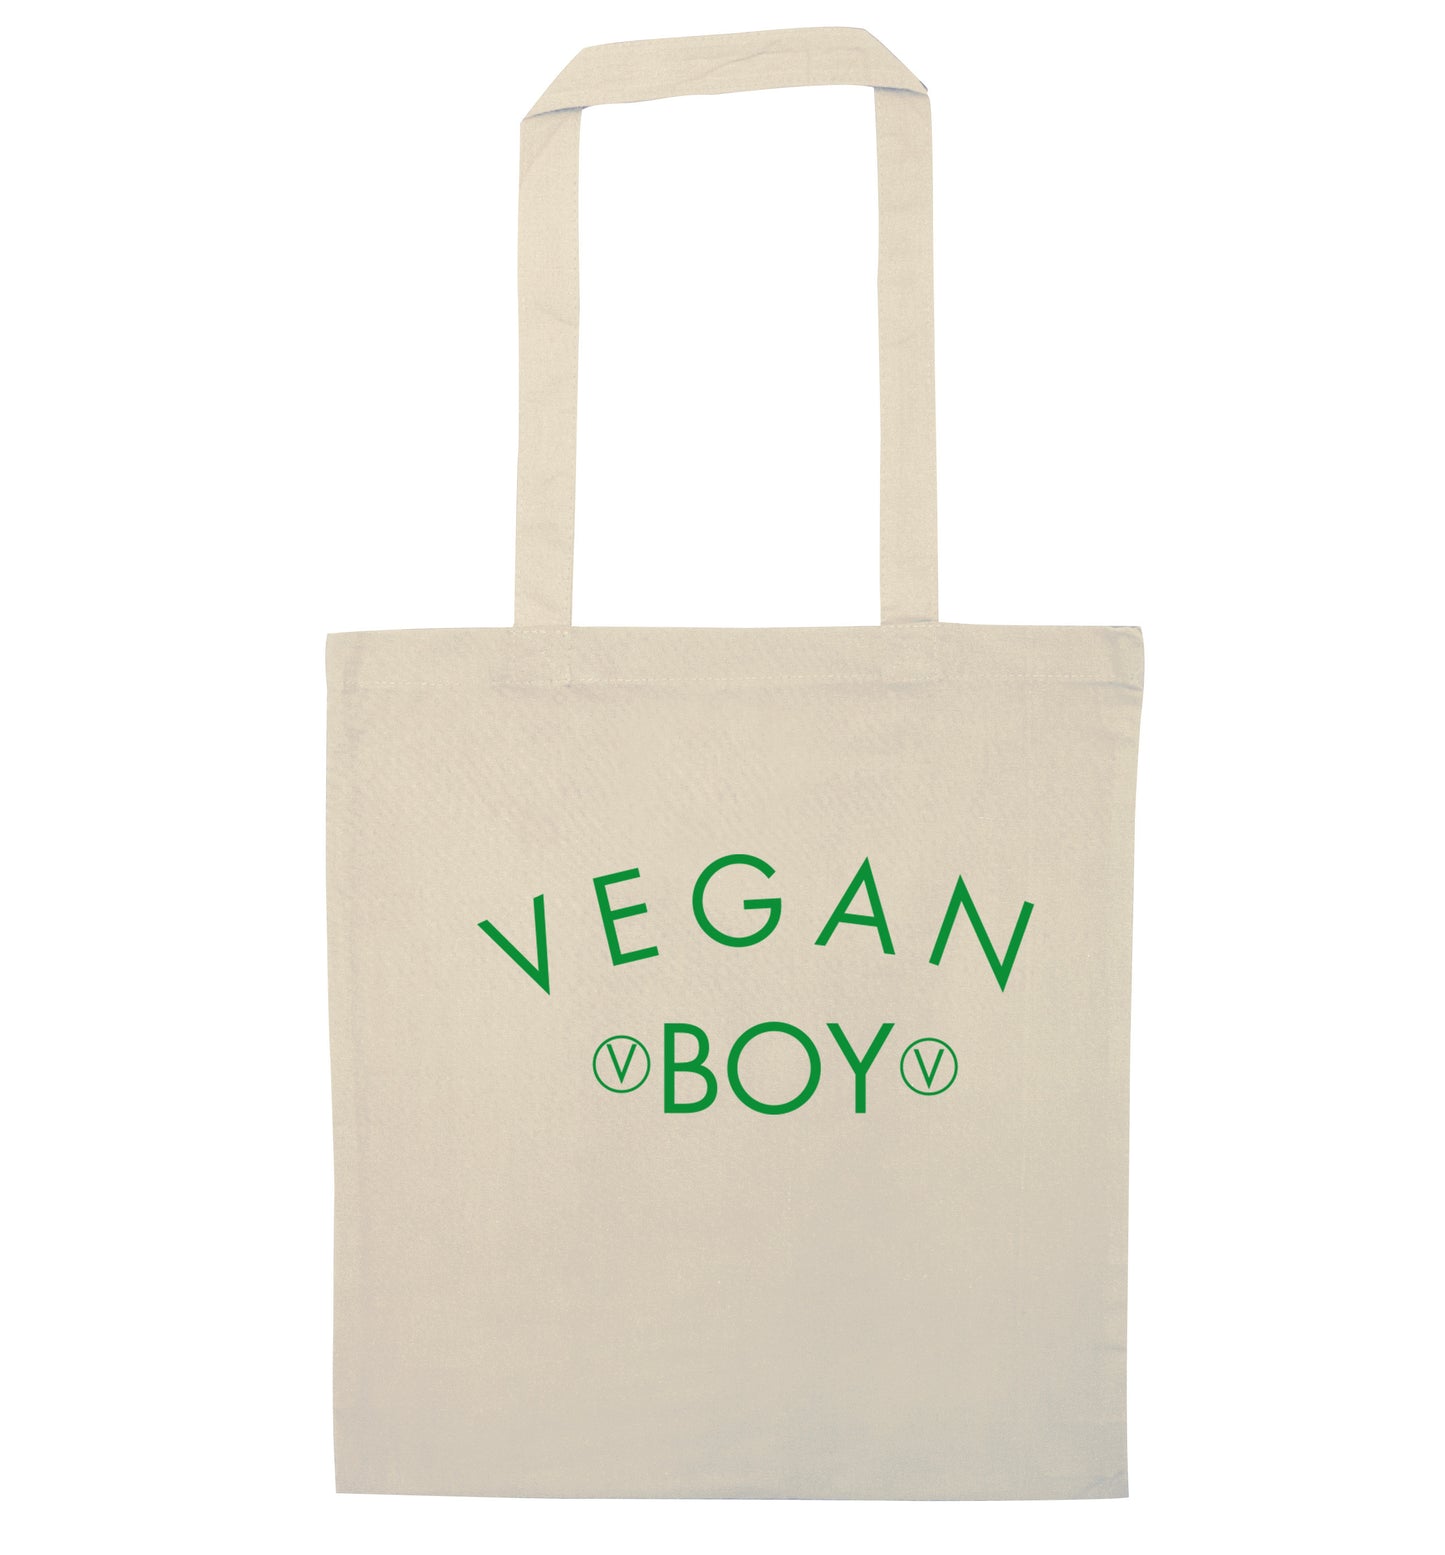 Vegan boy natural tote bag